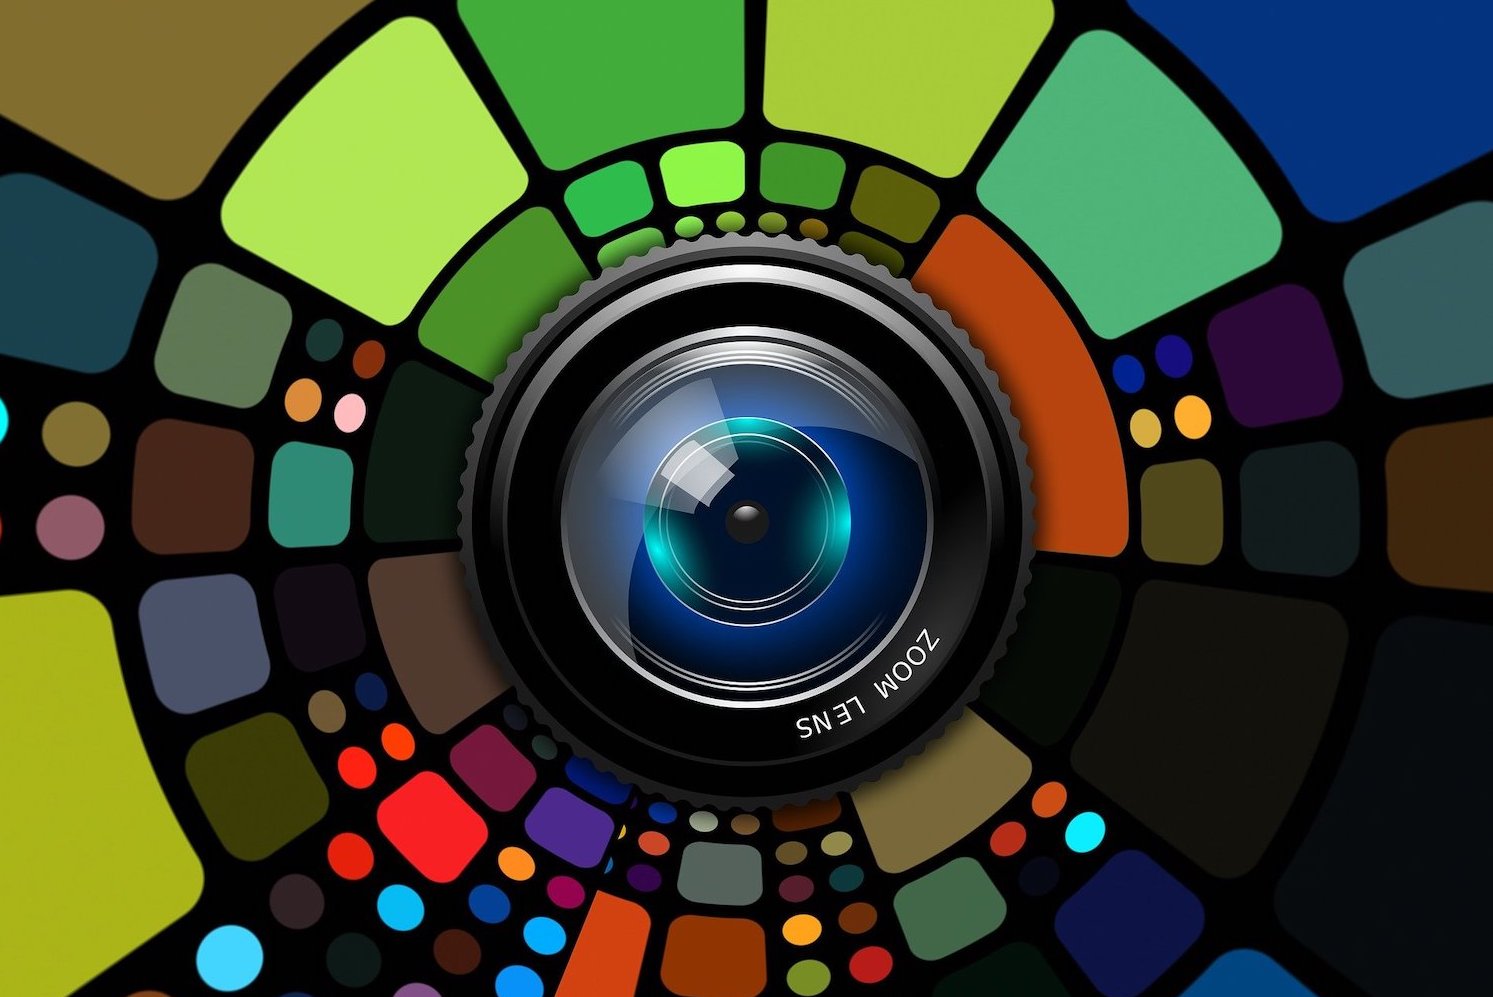 Camera lens by Geralt on Pixabay